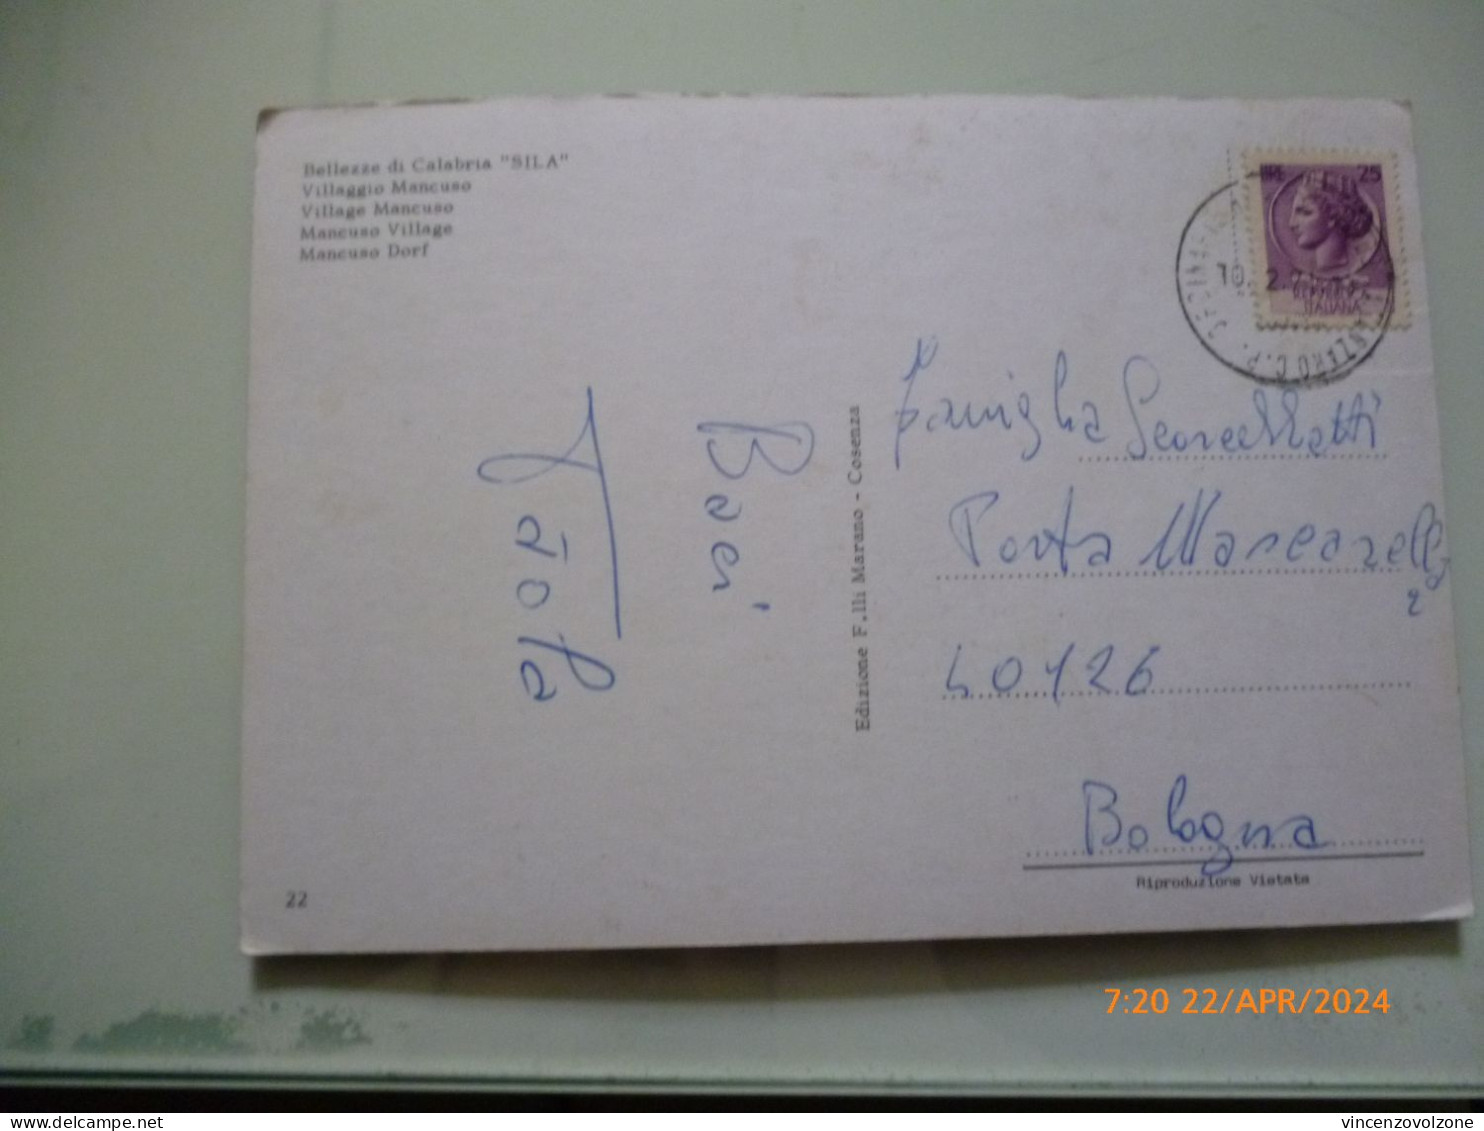 Cartolina Viaggiata "Bellezze Della Calabria SILA Villaggio Mancuso" 1973 - Cosenza